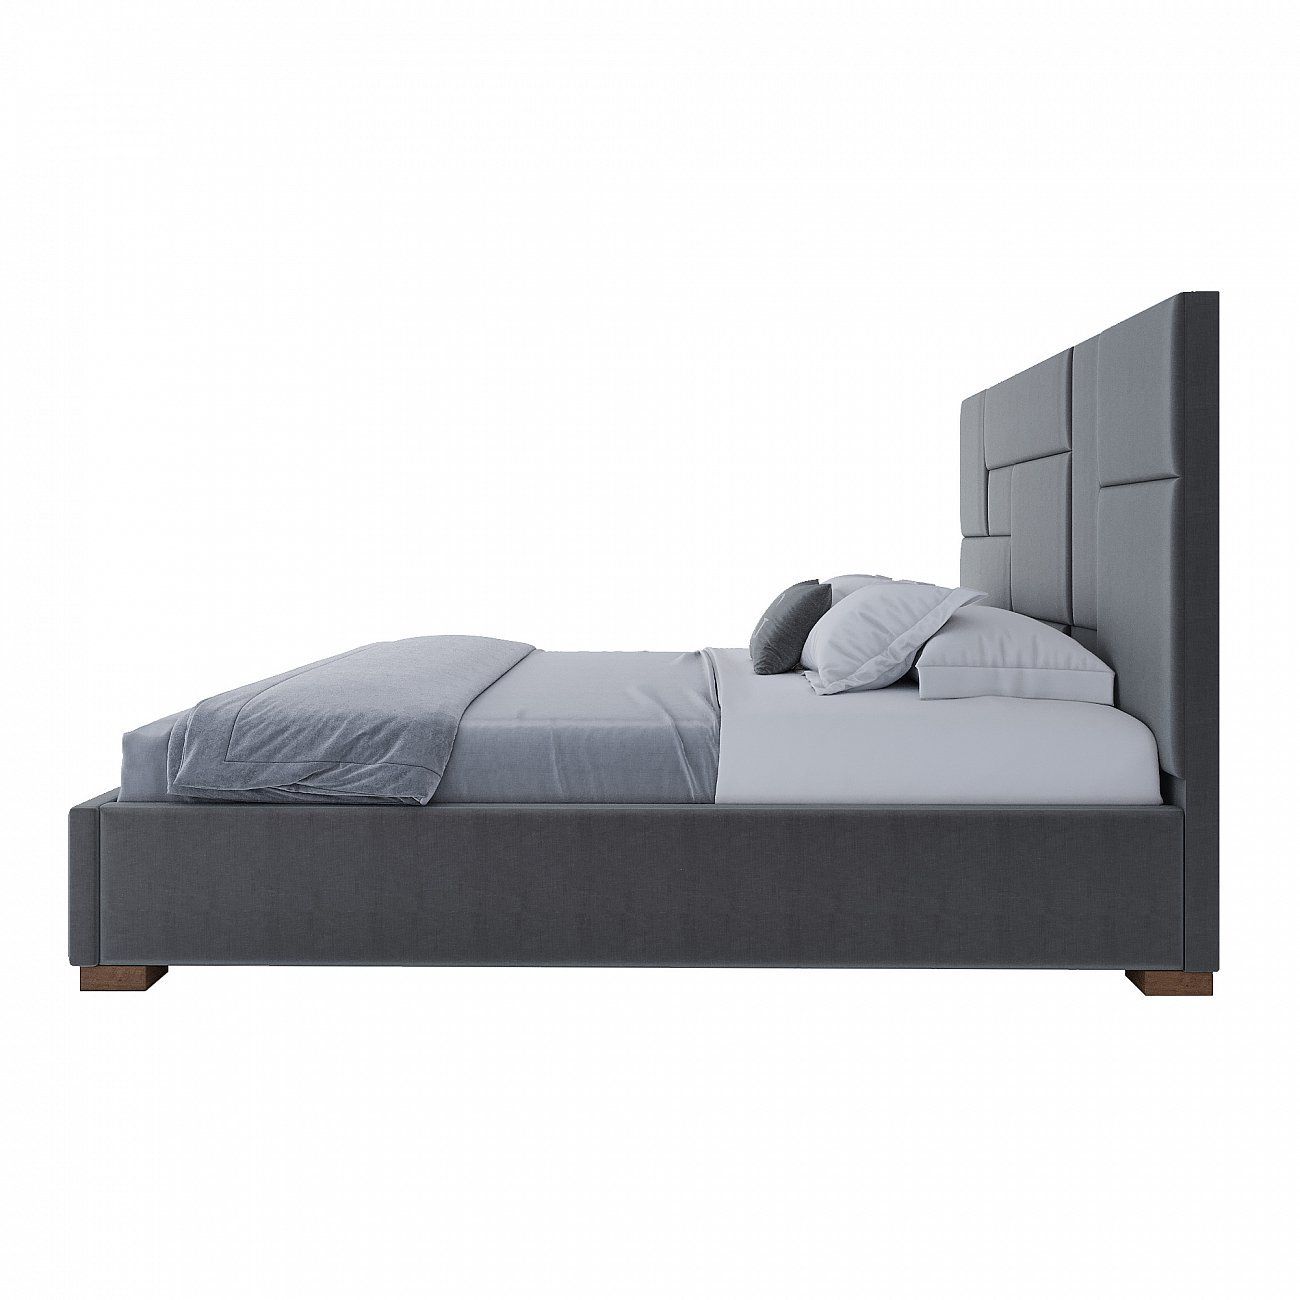 Кровать двуспальная с мягким изголовьем 200х200 см серая Wax